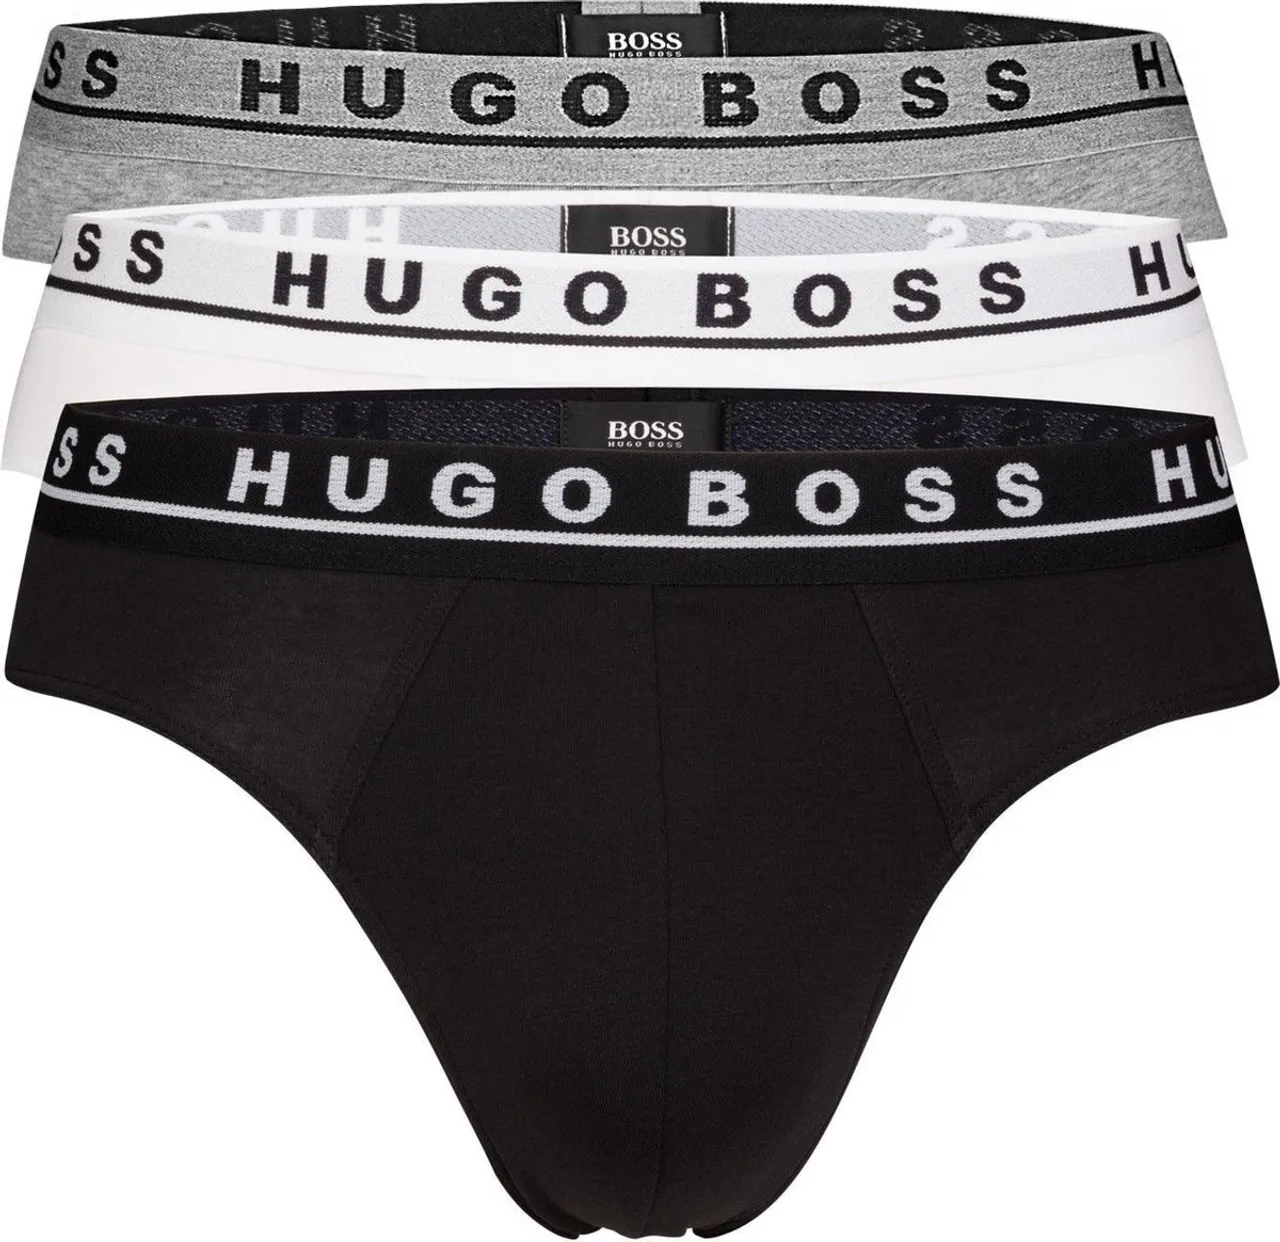 Hugo Boss 3-pack Brief / Slip Cotton Stretch Wit, Zwart, Grijs